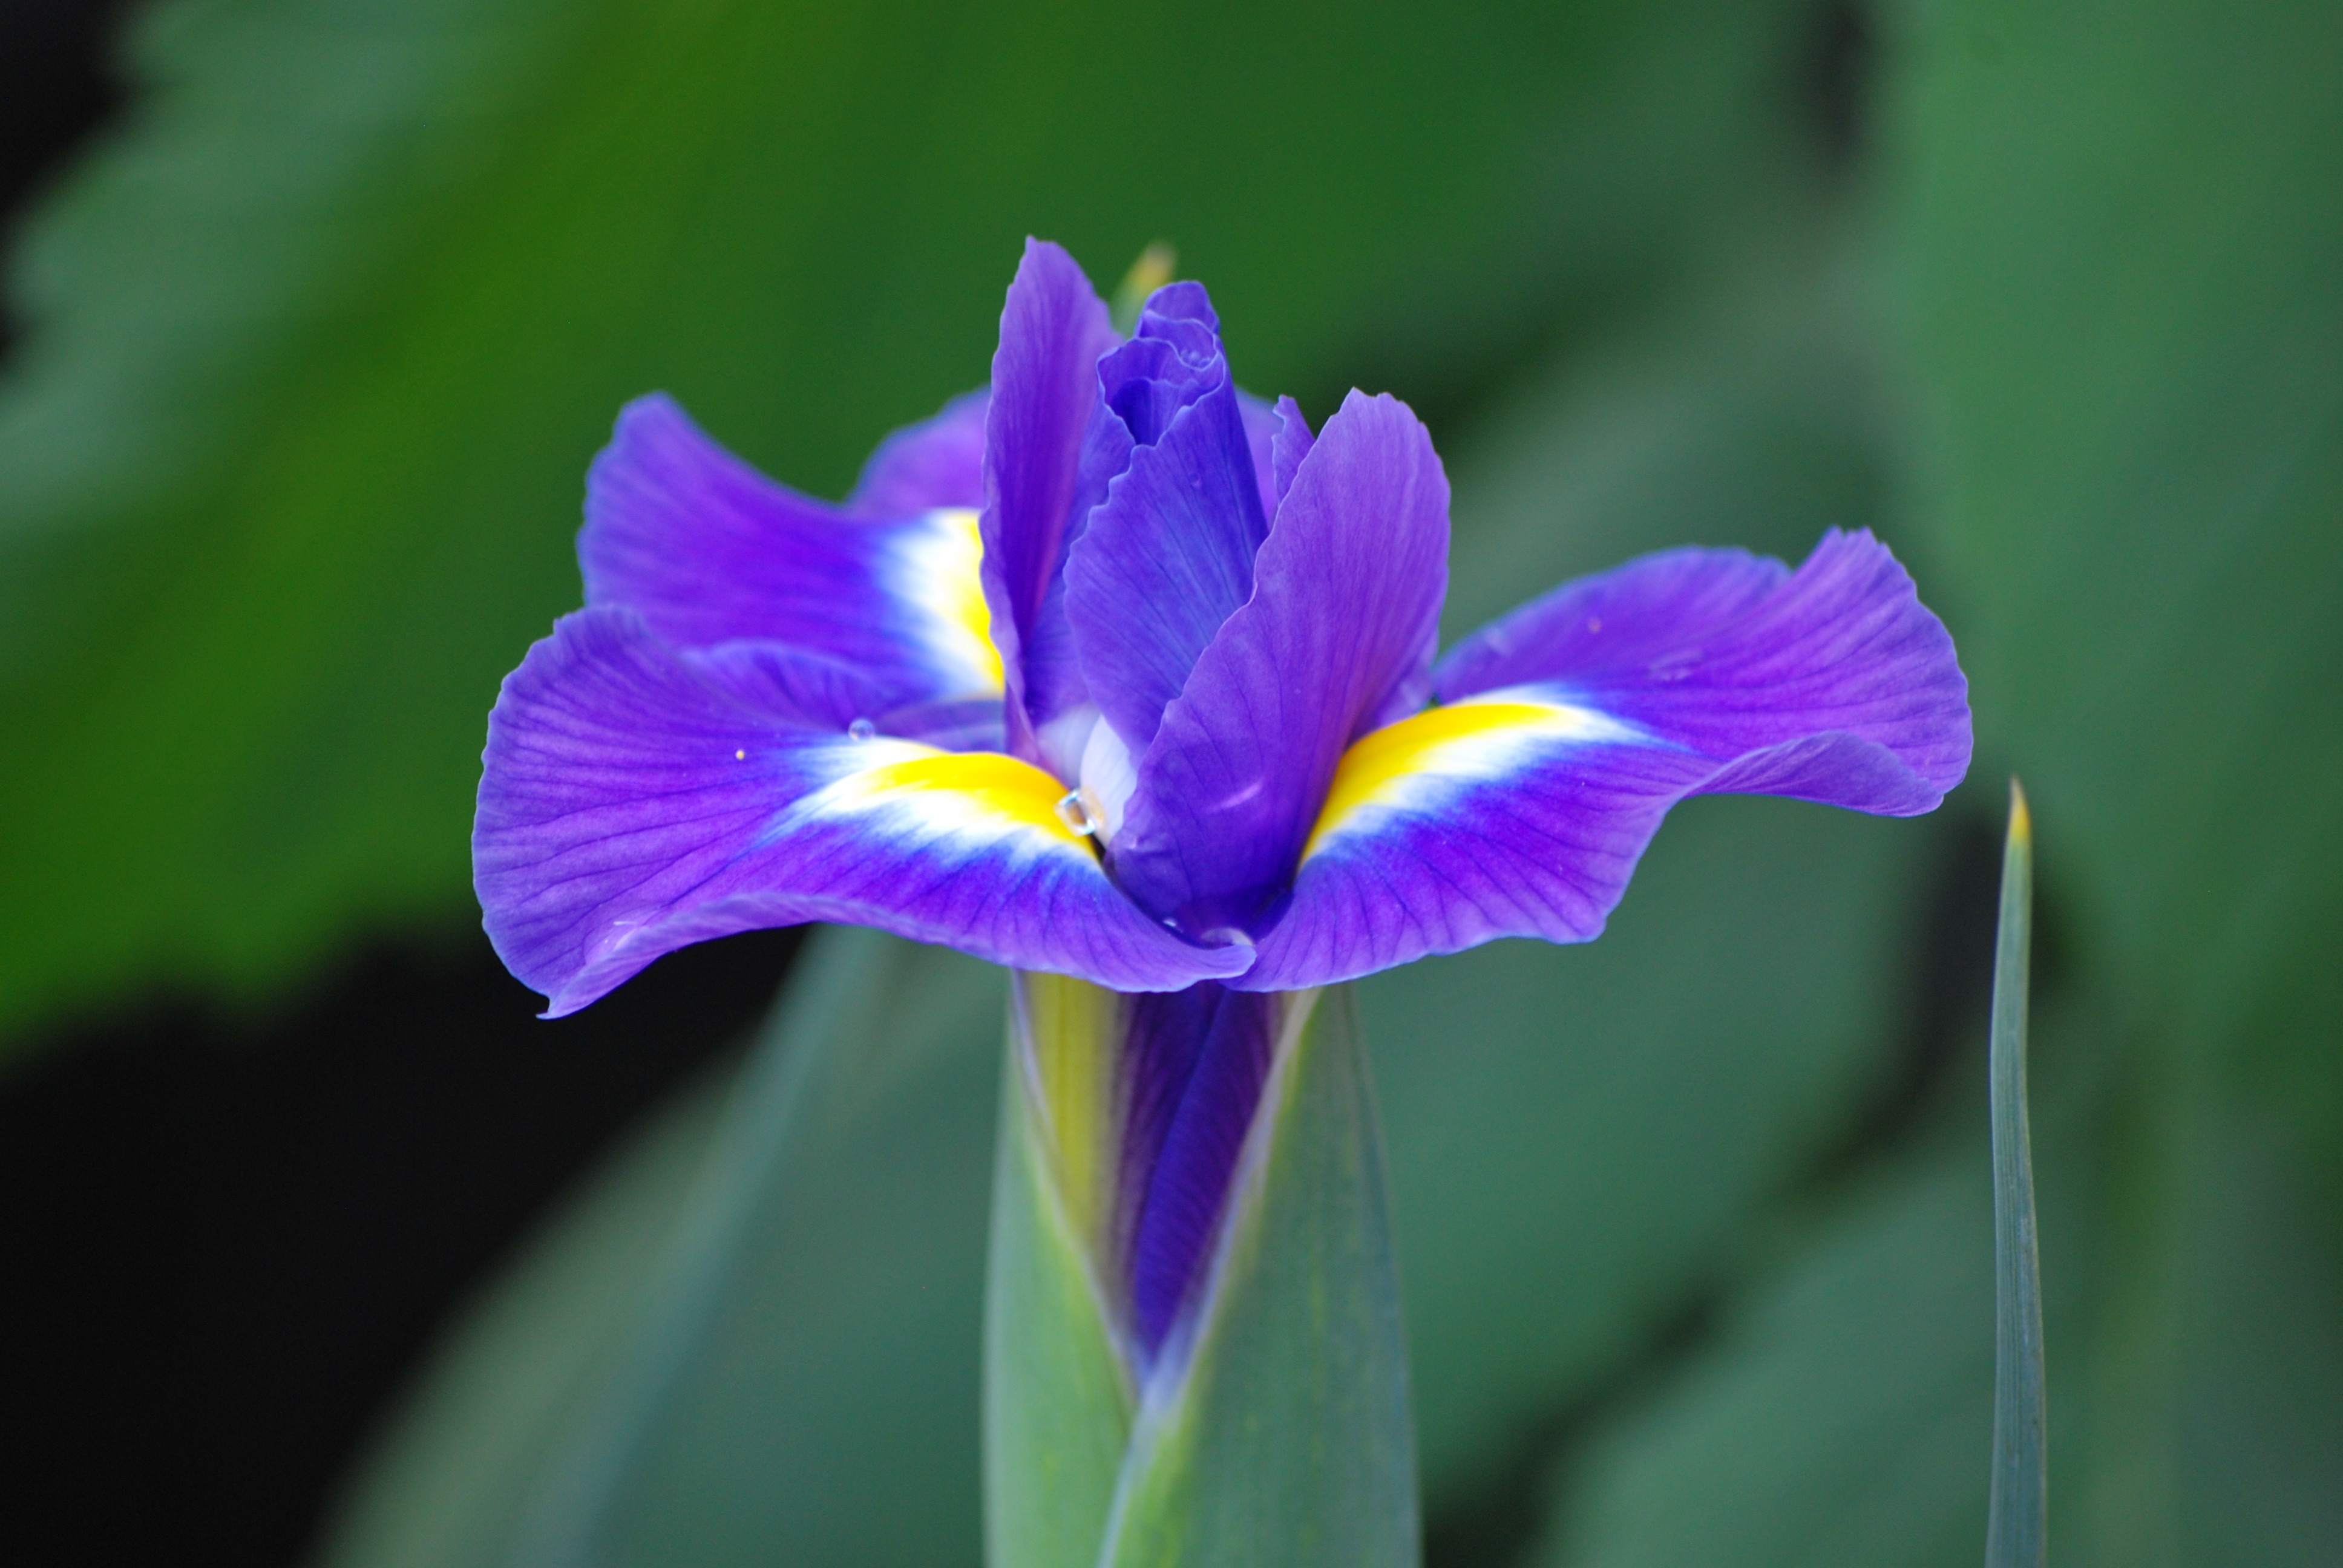 purple and yellow iris flower